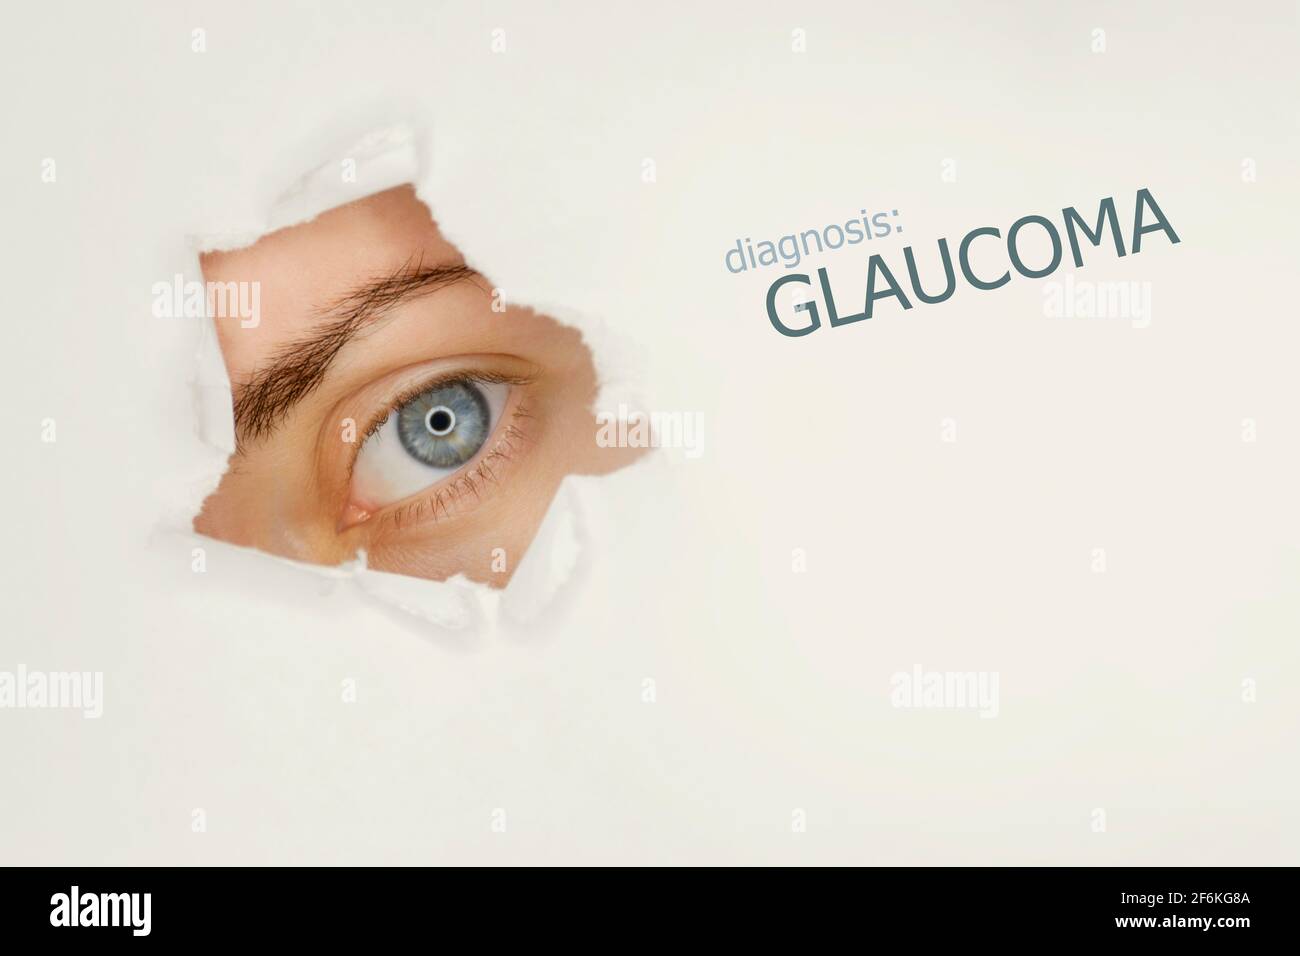 L'œil de la femme regarde par le trou de sarcelle dans le papier, mot glaucome sur la droite. Modèle de concept de maladie oculaire. Fond gris. Banque D'Images